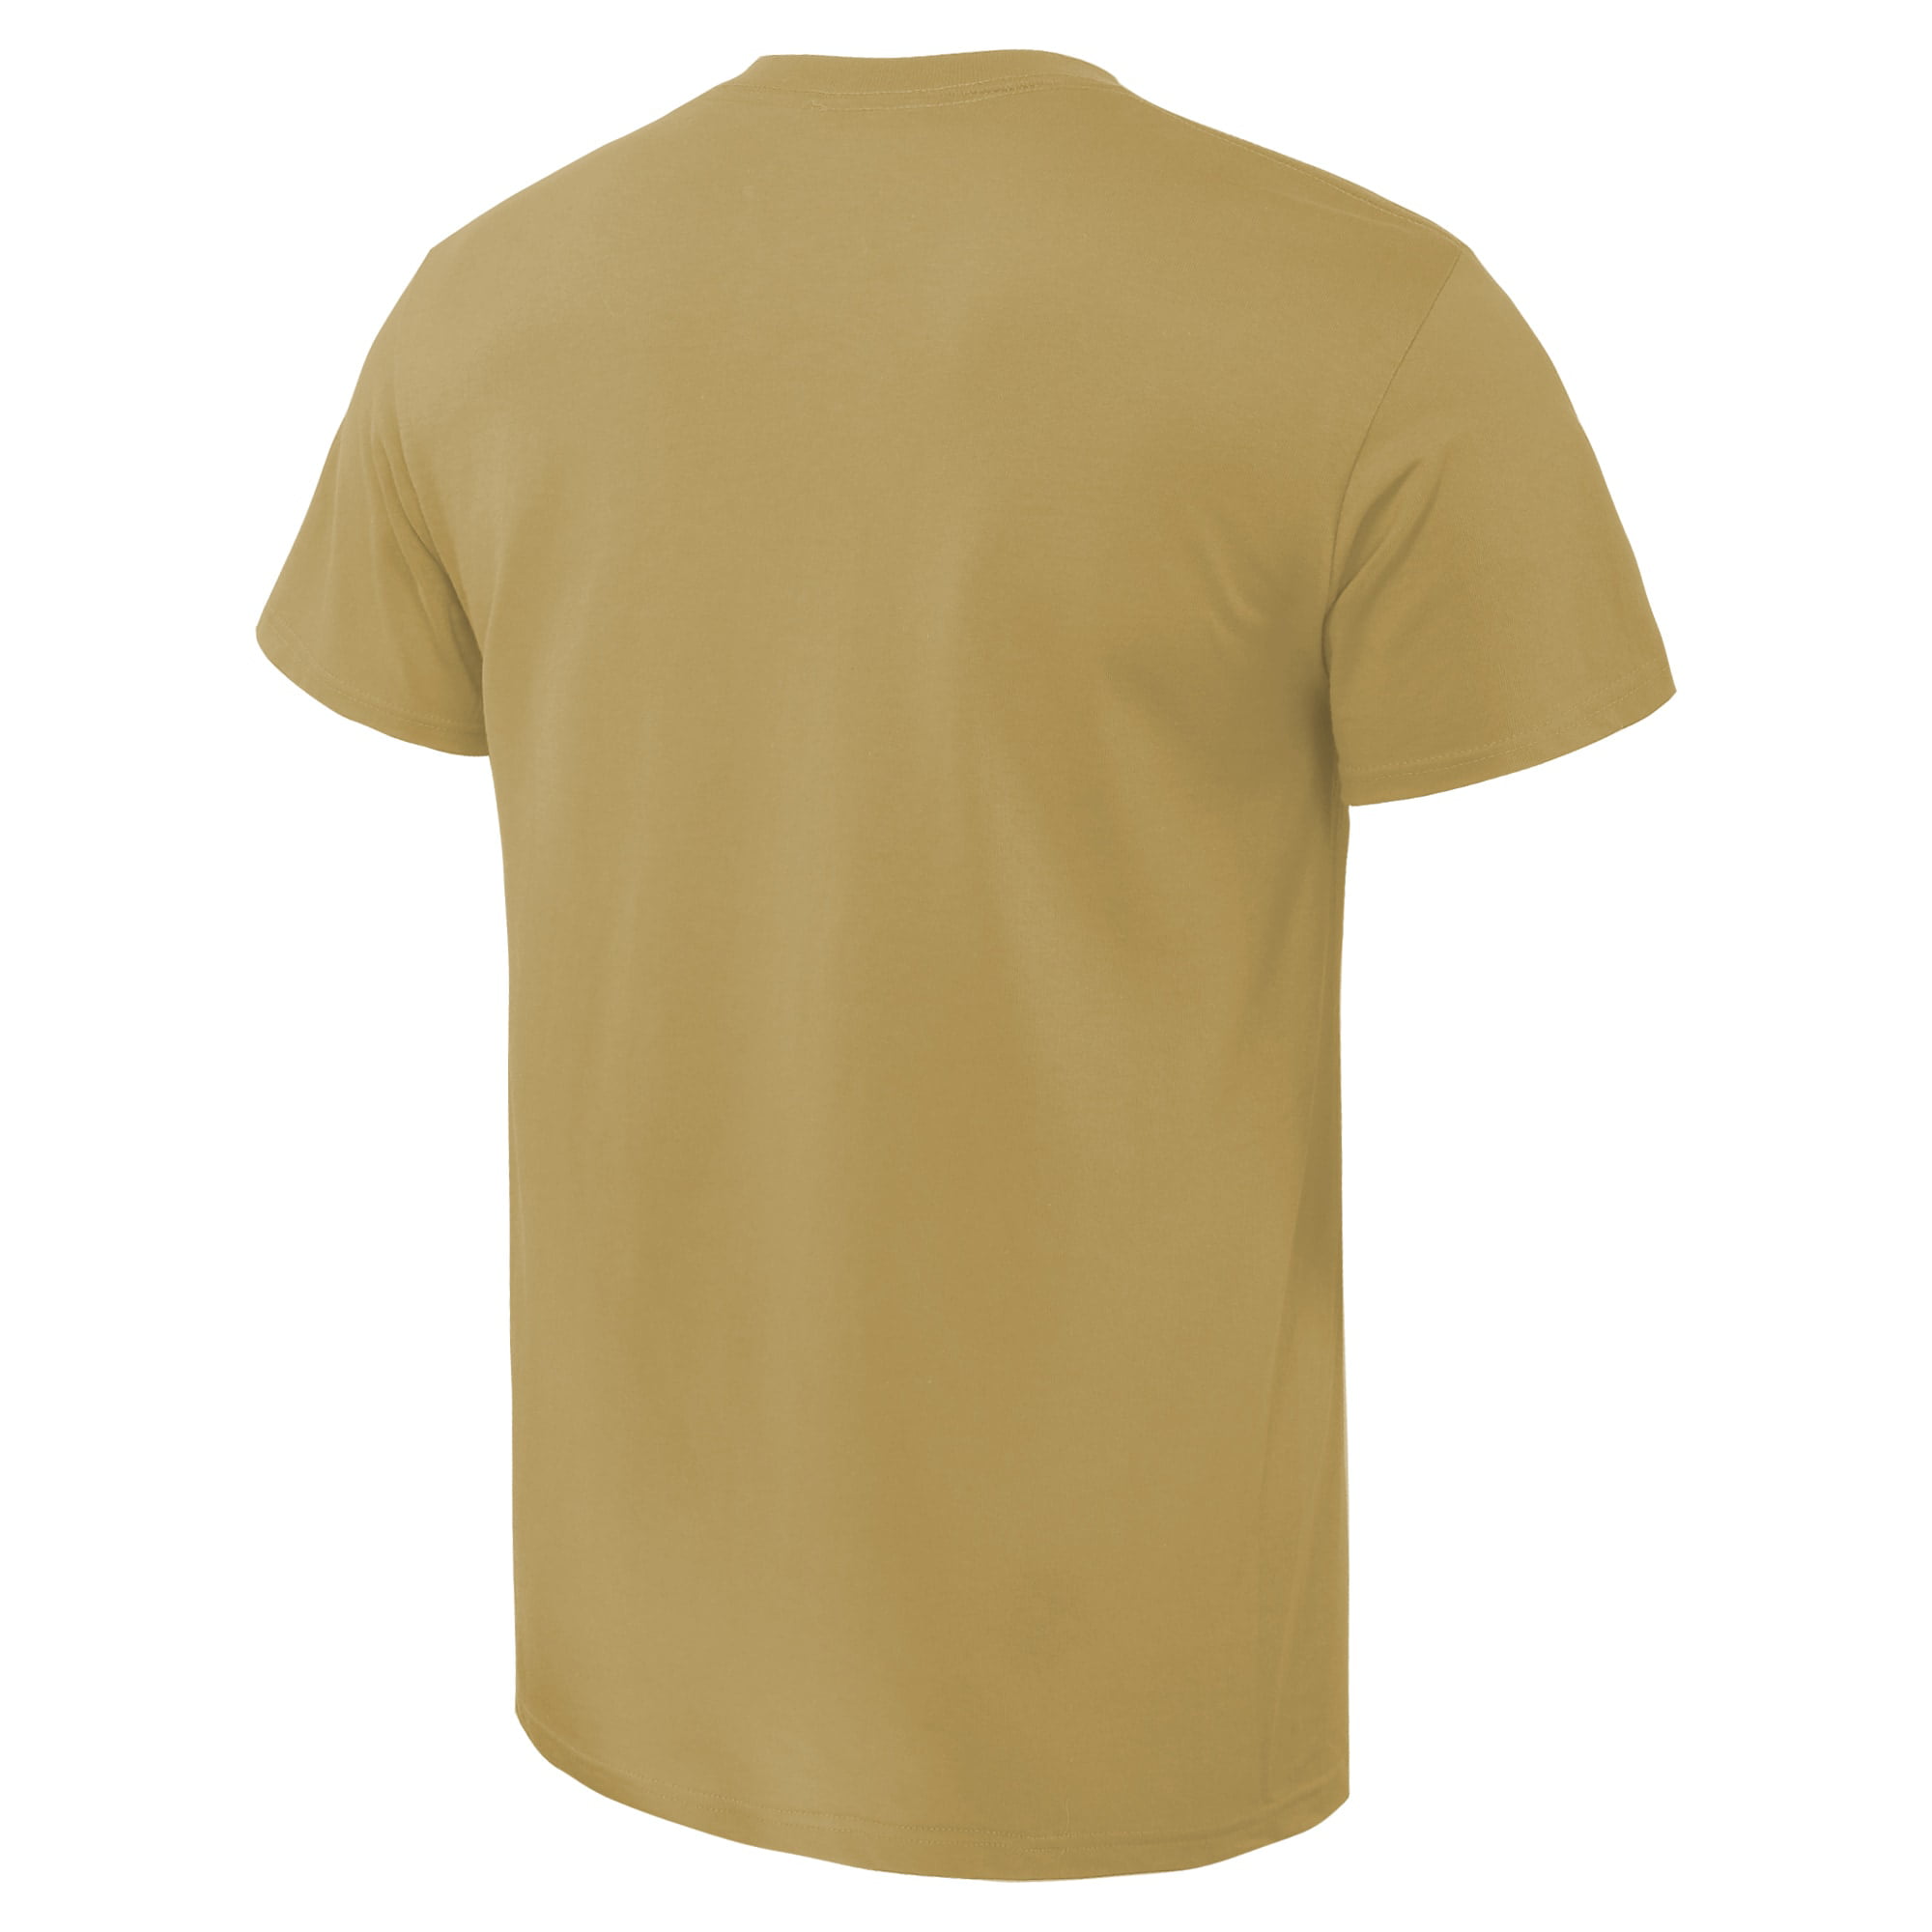 Arch T-Shirt - Vegas Gold - Walmart.com 